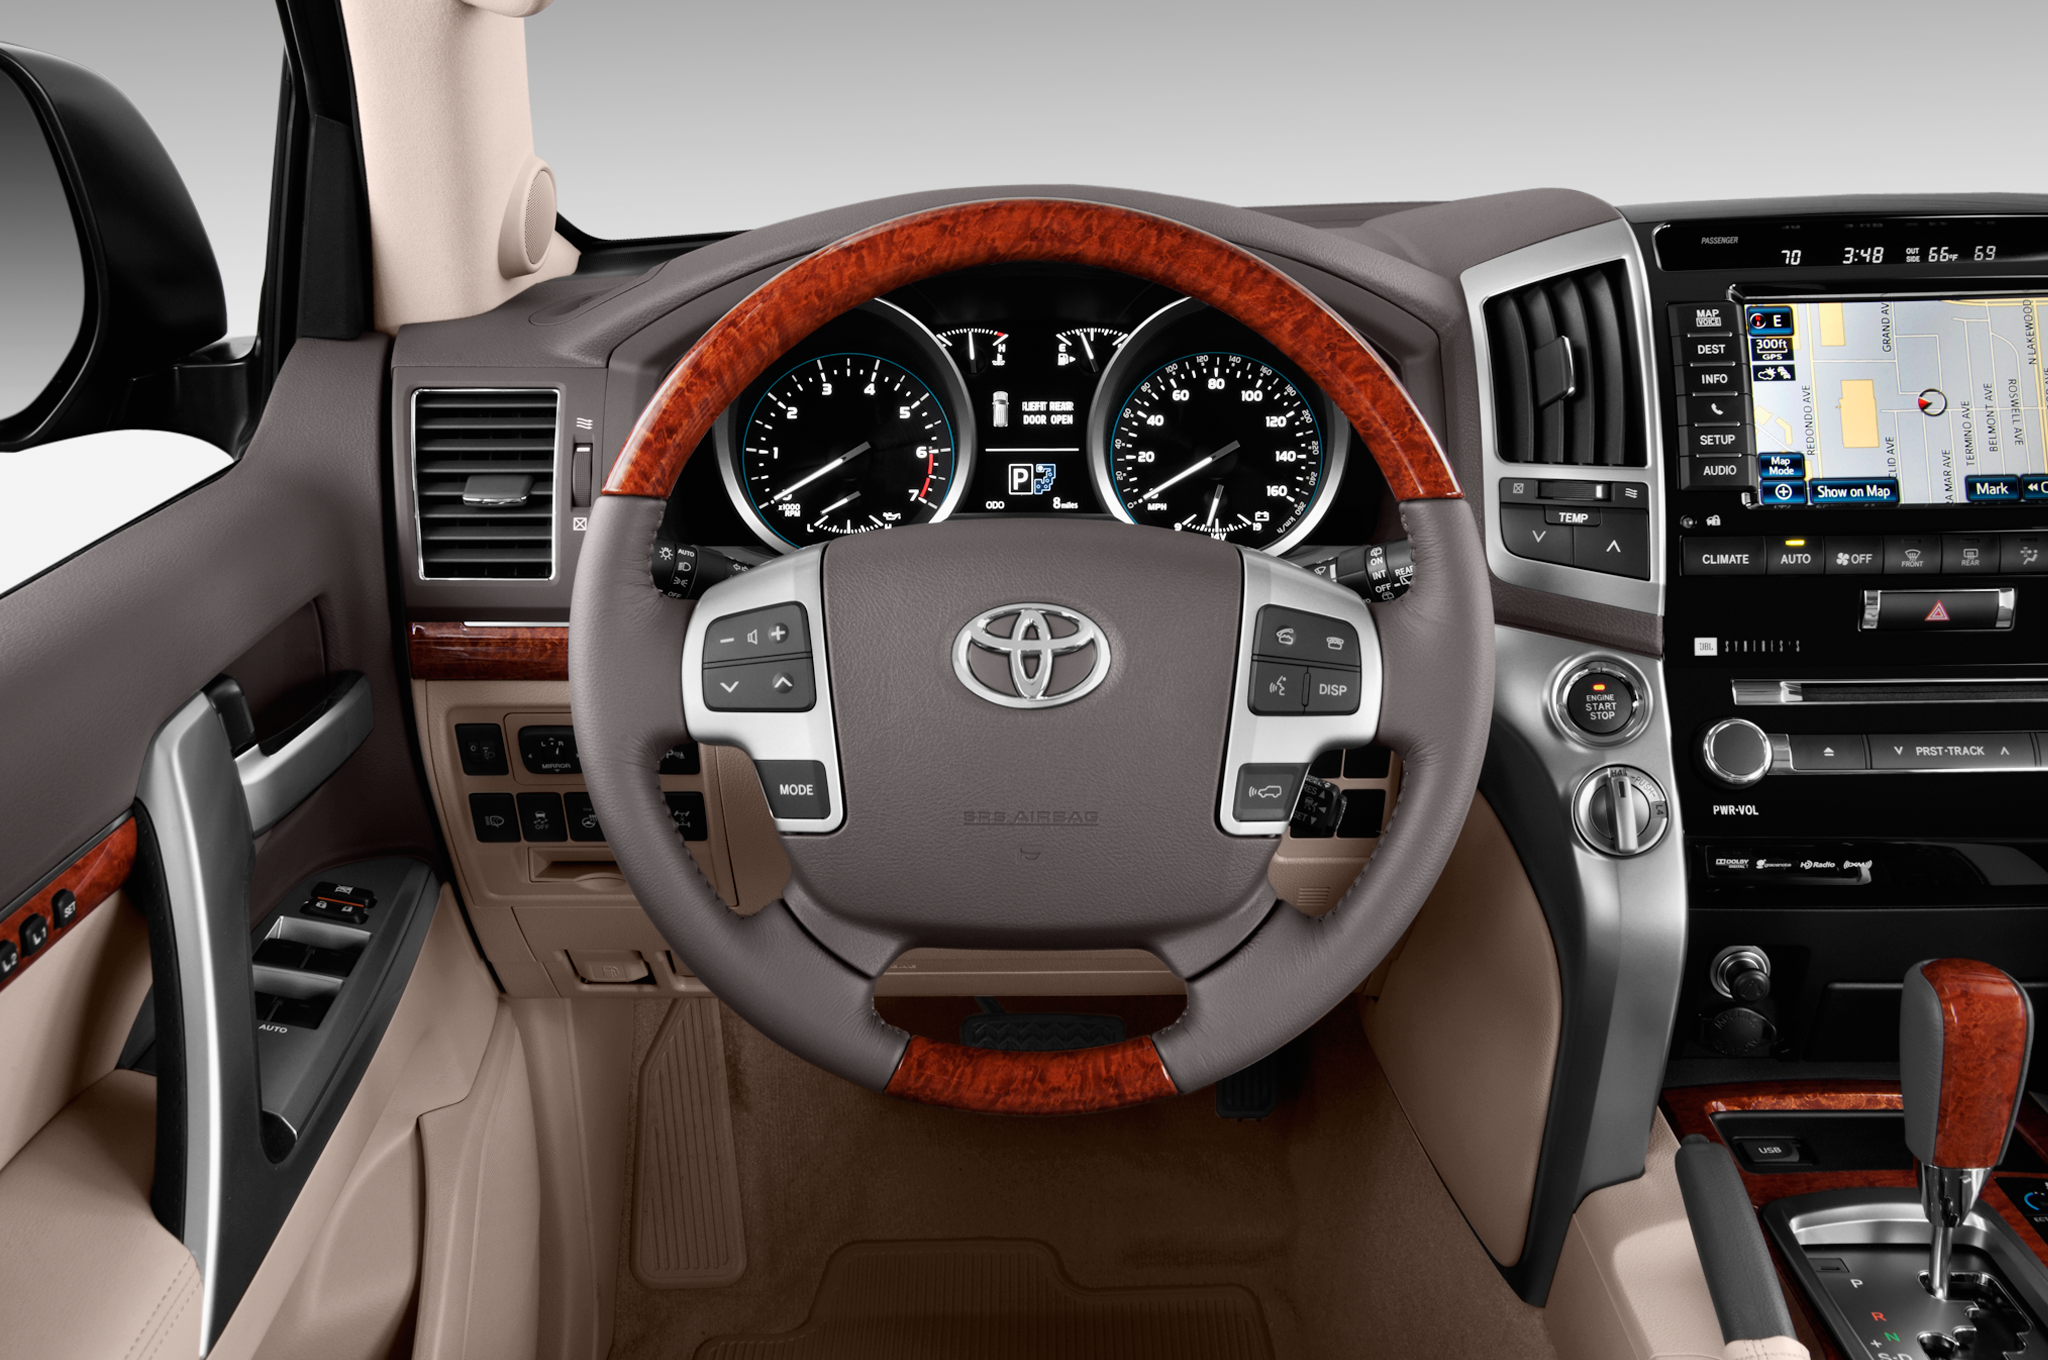 2014 Toyota Land Cruiser HD wallpapers, Desktop wallpaper - most viewed